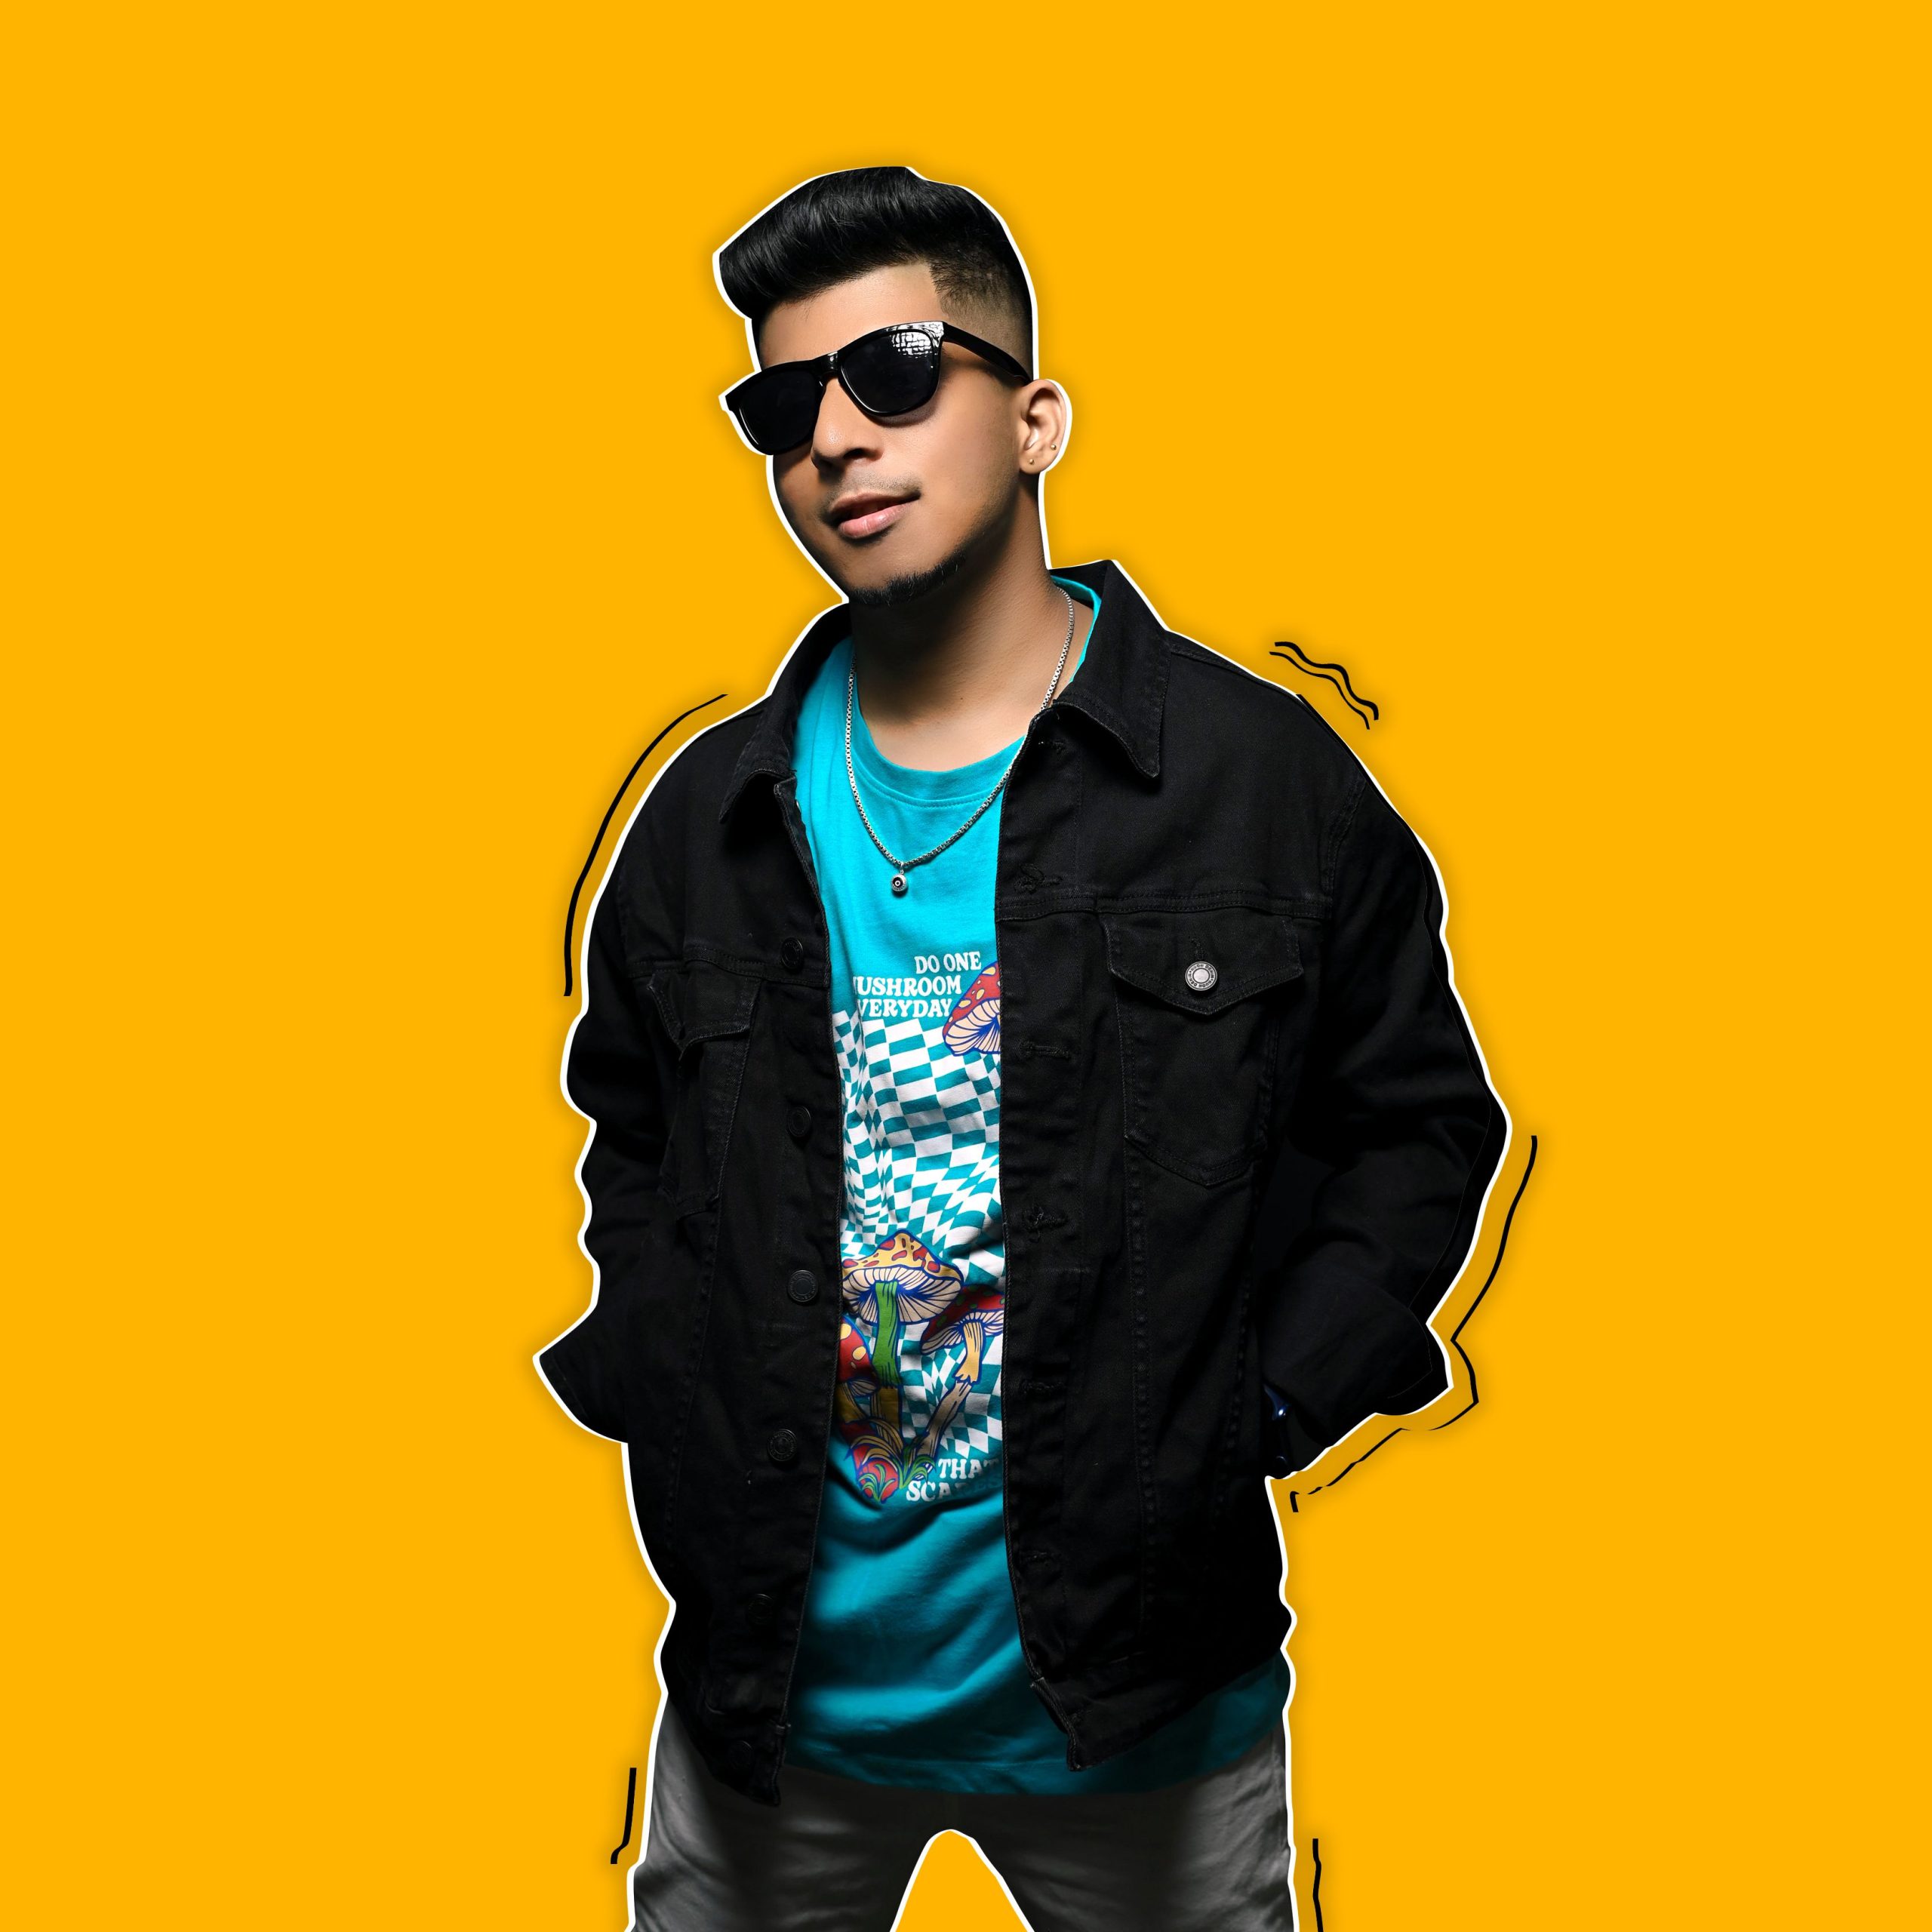 DJ Anik Desai